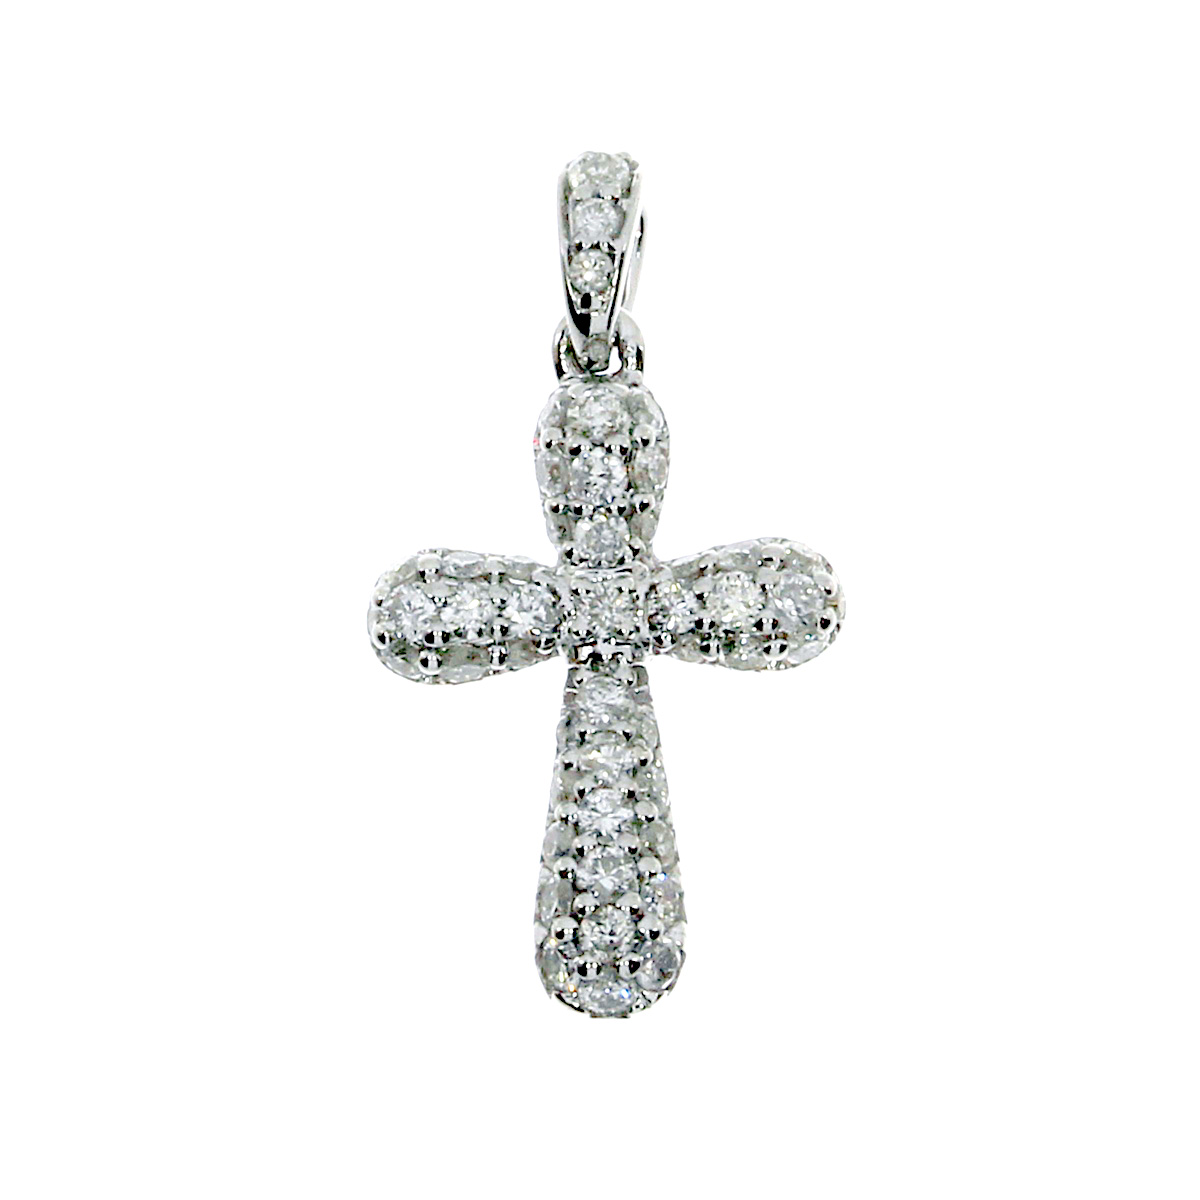 JCX3058: 14k white gold cross pendant with shimmering diamonds.